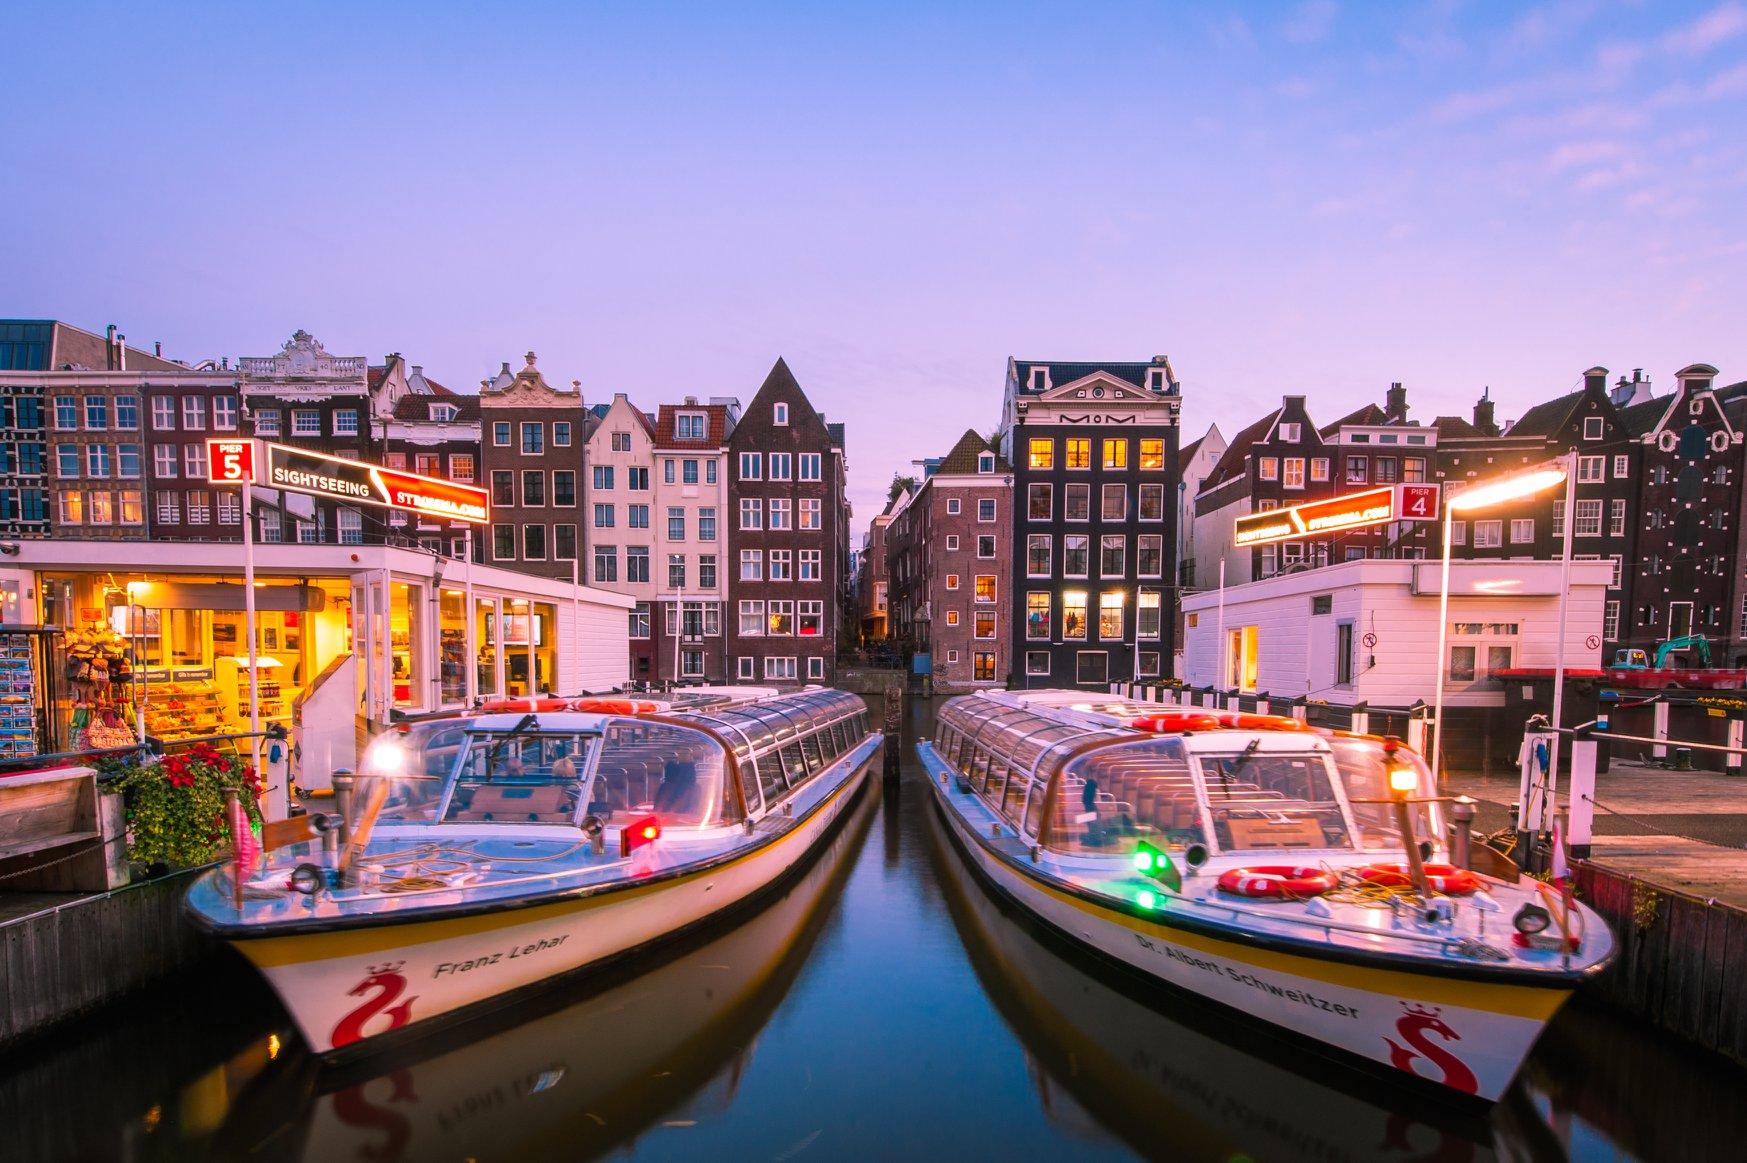 Rondvaart door de grachten met Canal Tours Amsterdam (60 min)